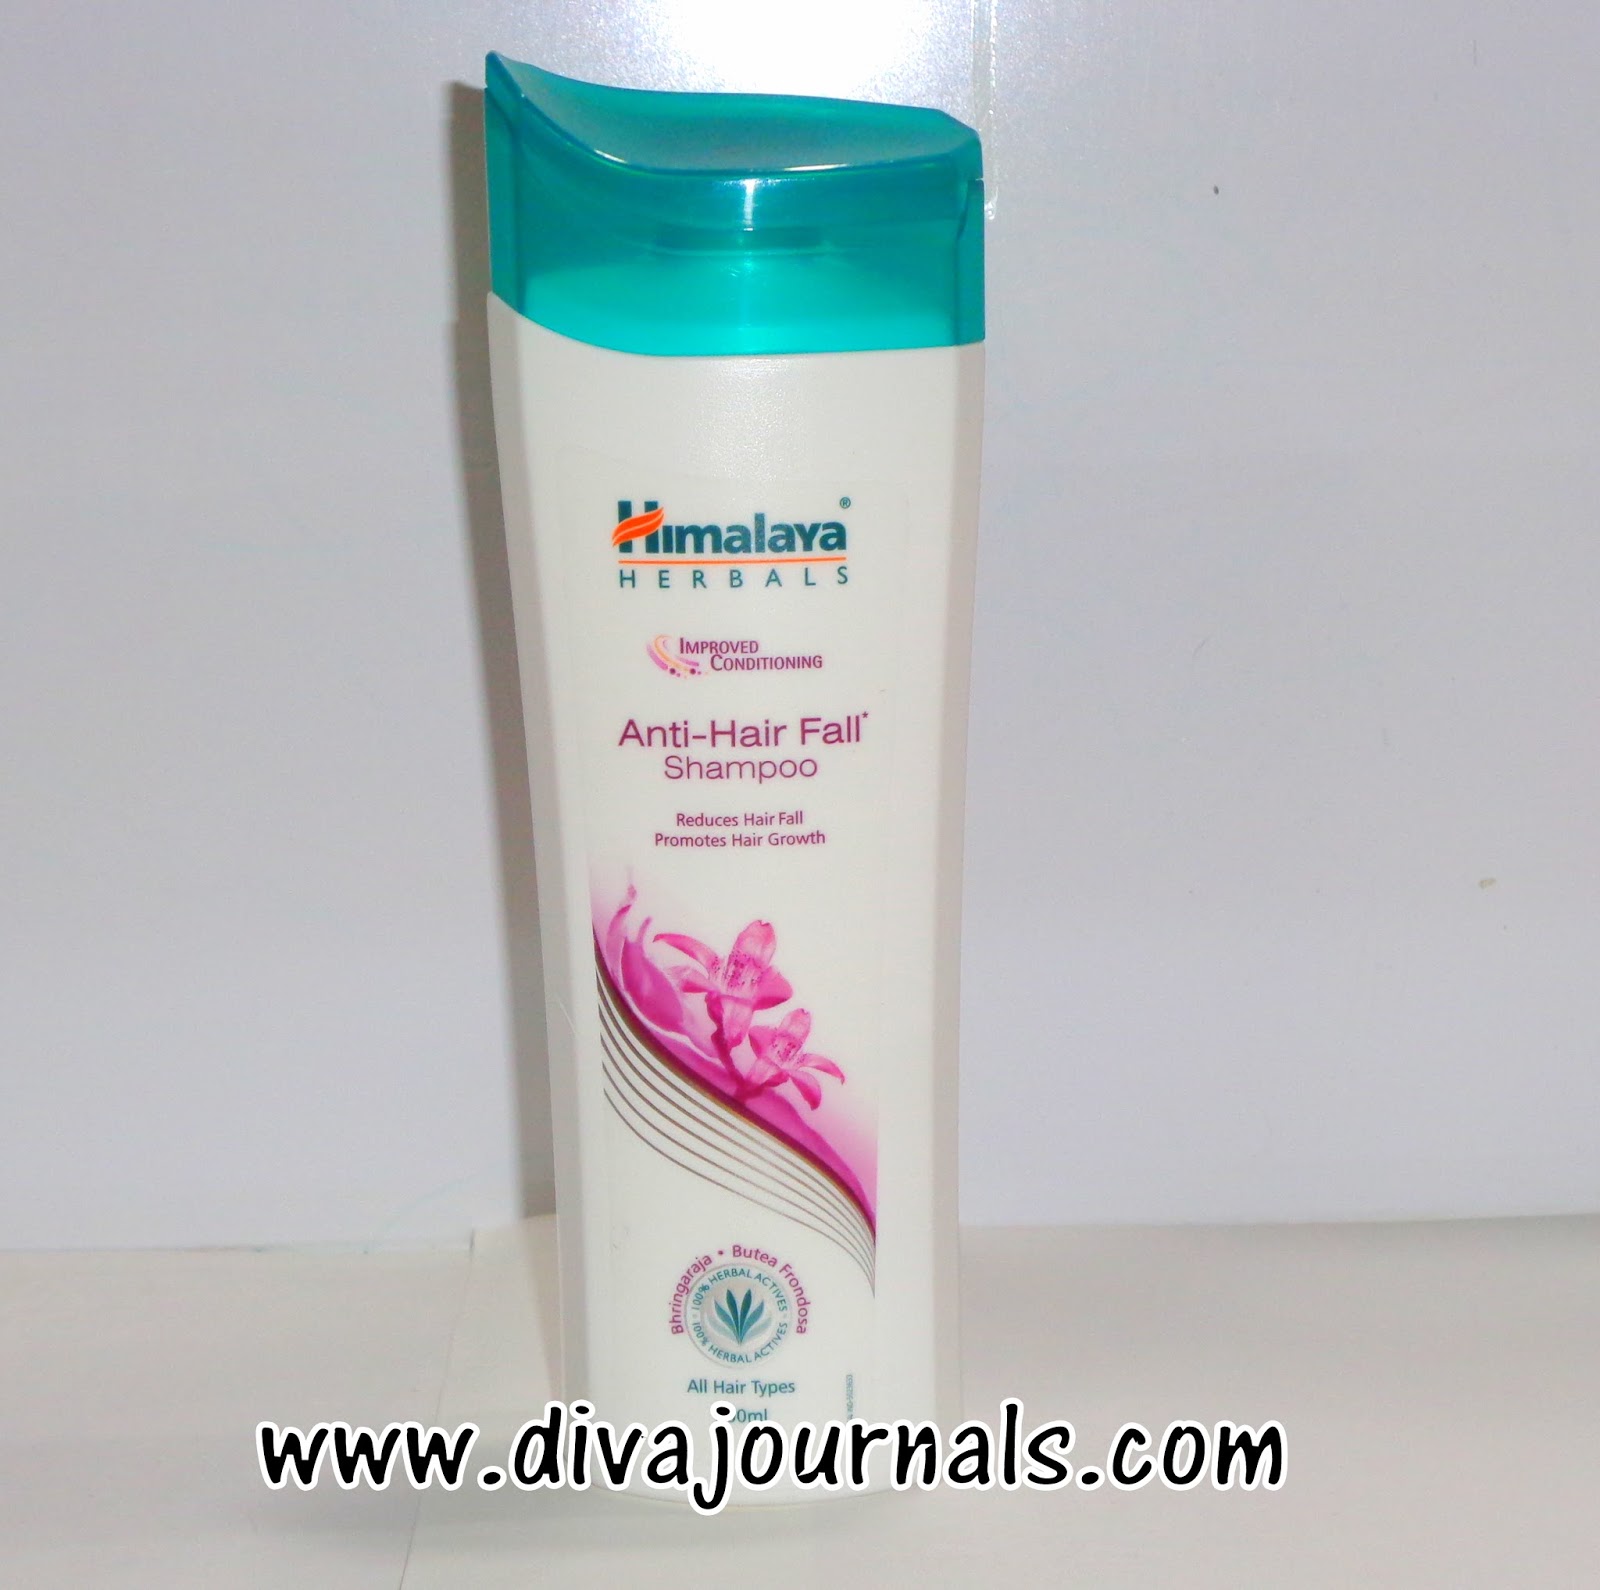 Himalaya Herbals Anti-Hairfall Shampoo Review